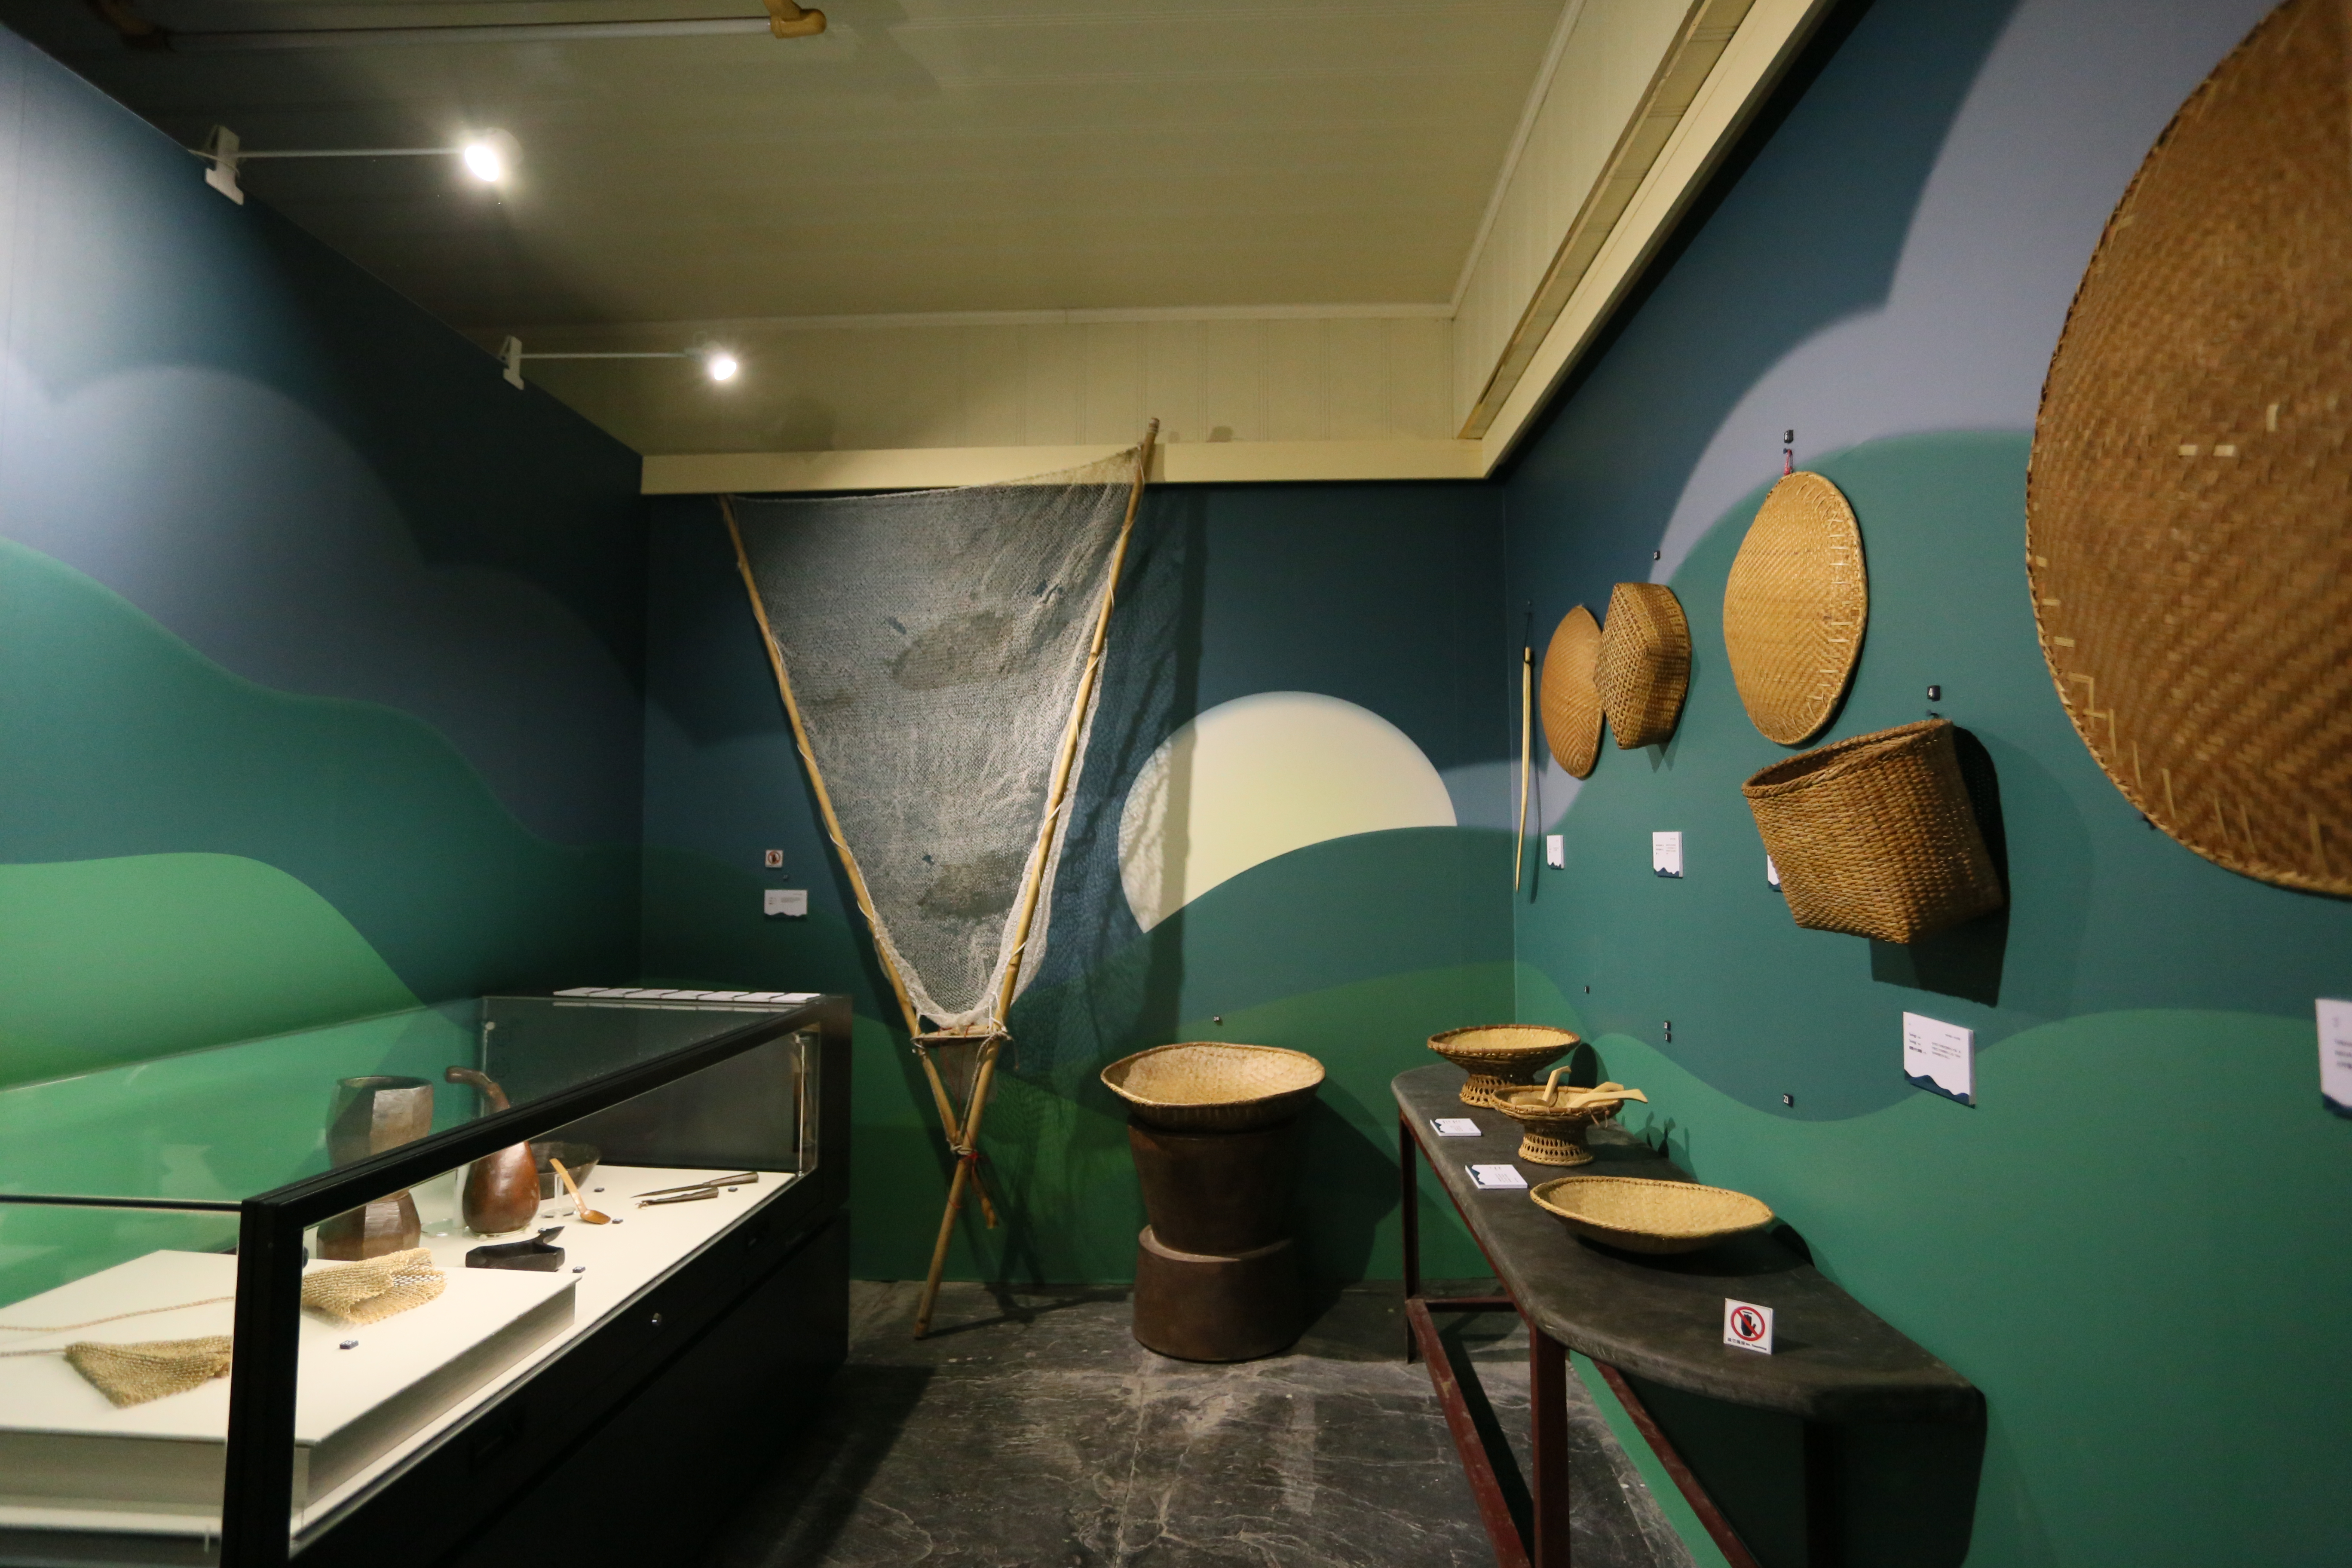 現場展出傳統藤製與木製廚具、漁撈工具。